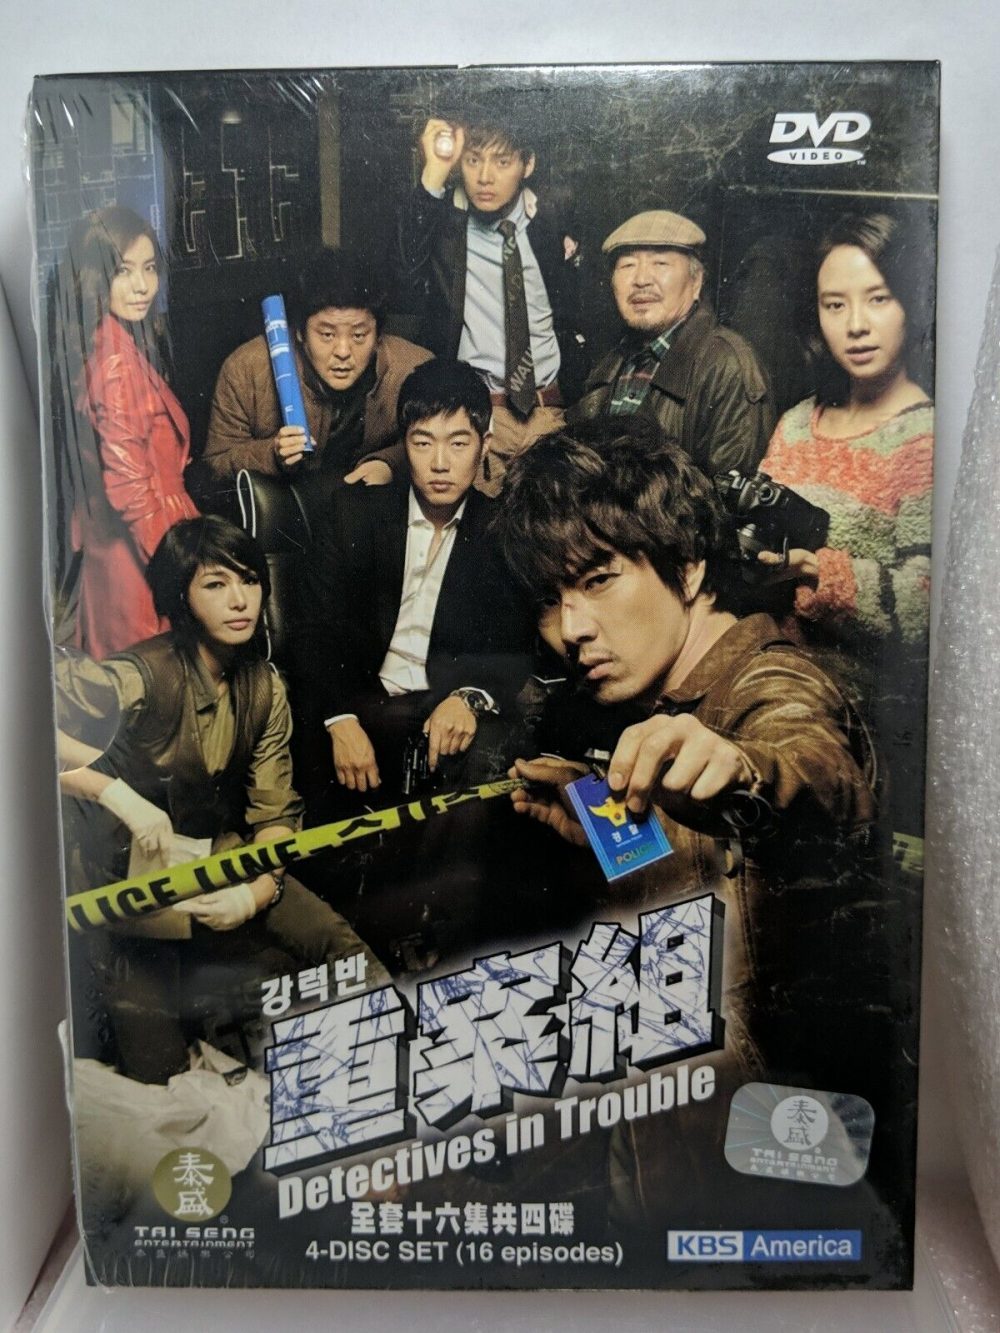 Phim của Song Ji Hyo: Dấu ấn đoạt mệnh - Detectives in trouble (2011)